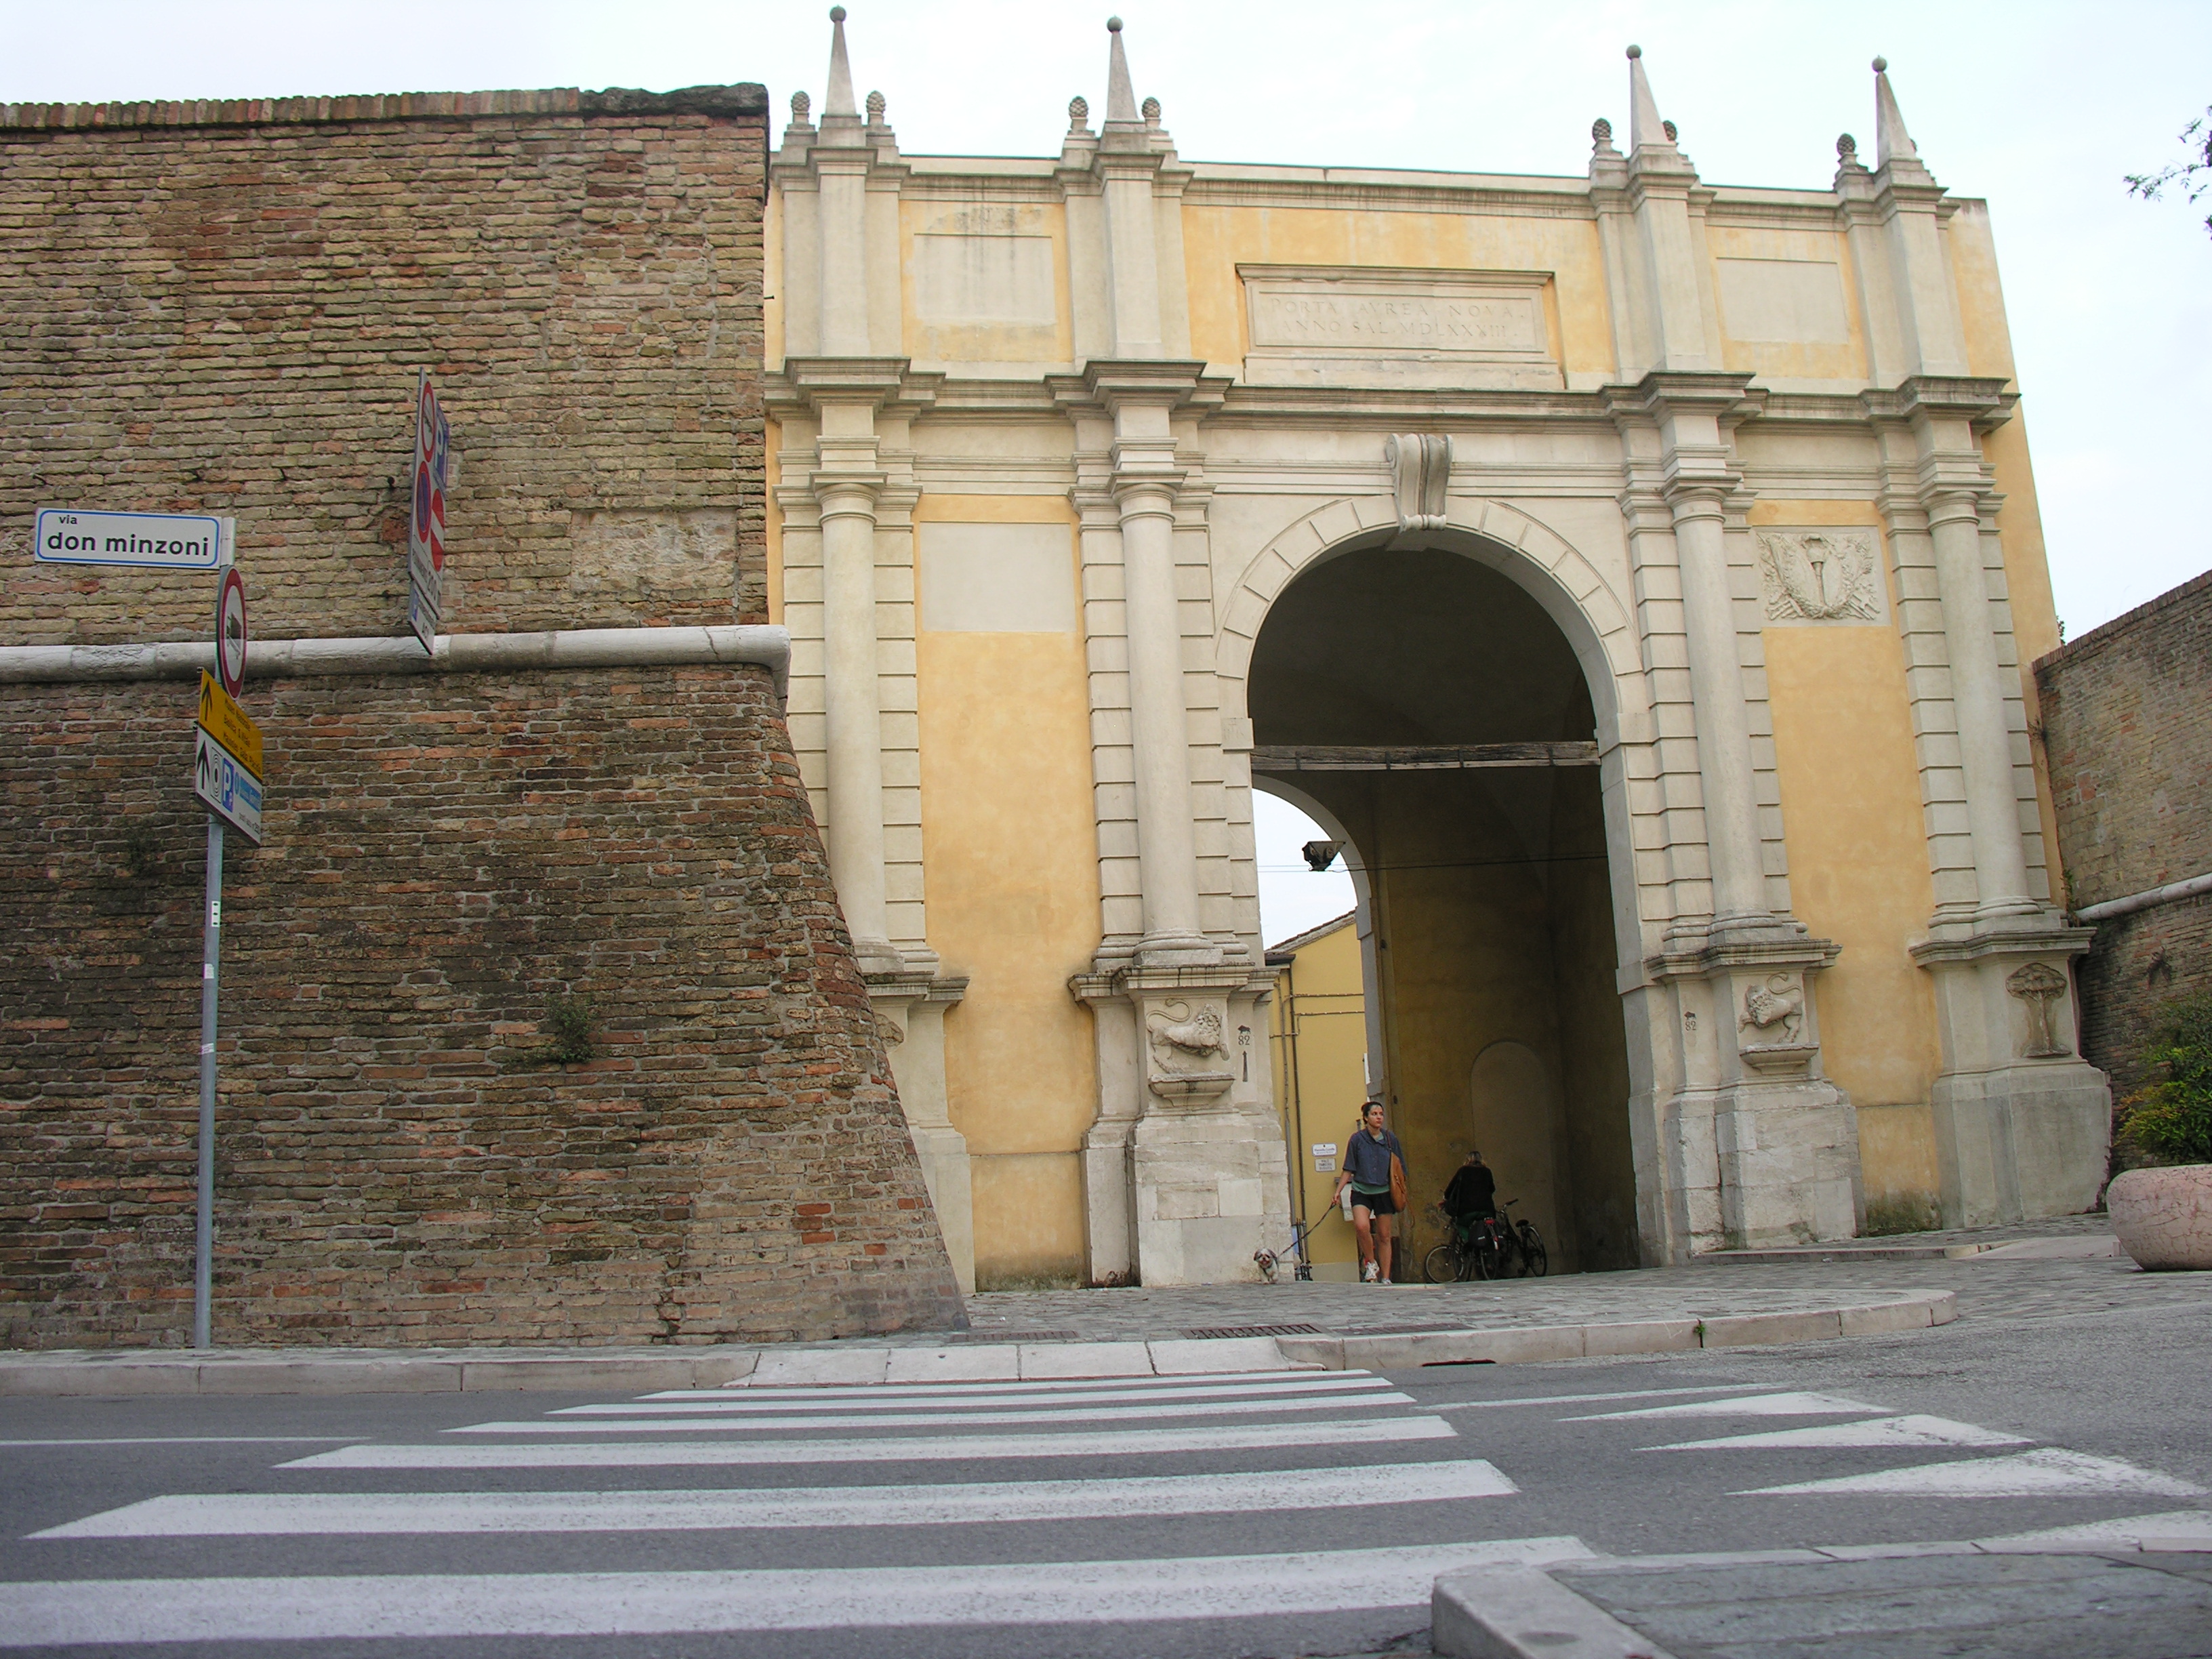 photo: https://upload.wikimedia.org/wikipedia/commons/2/20/Porta_adriana%2C_la_facciata_con_le_vecchia_mura.JPG